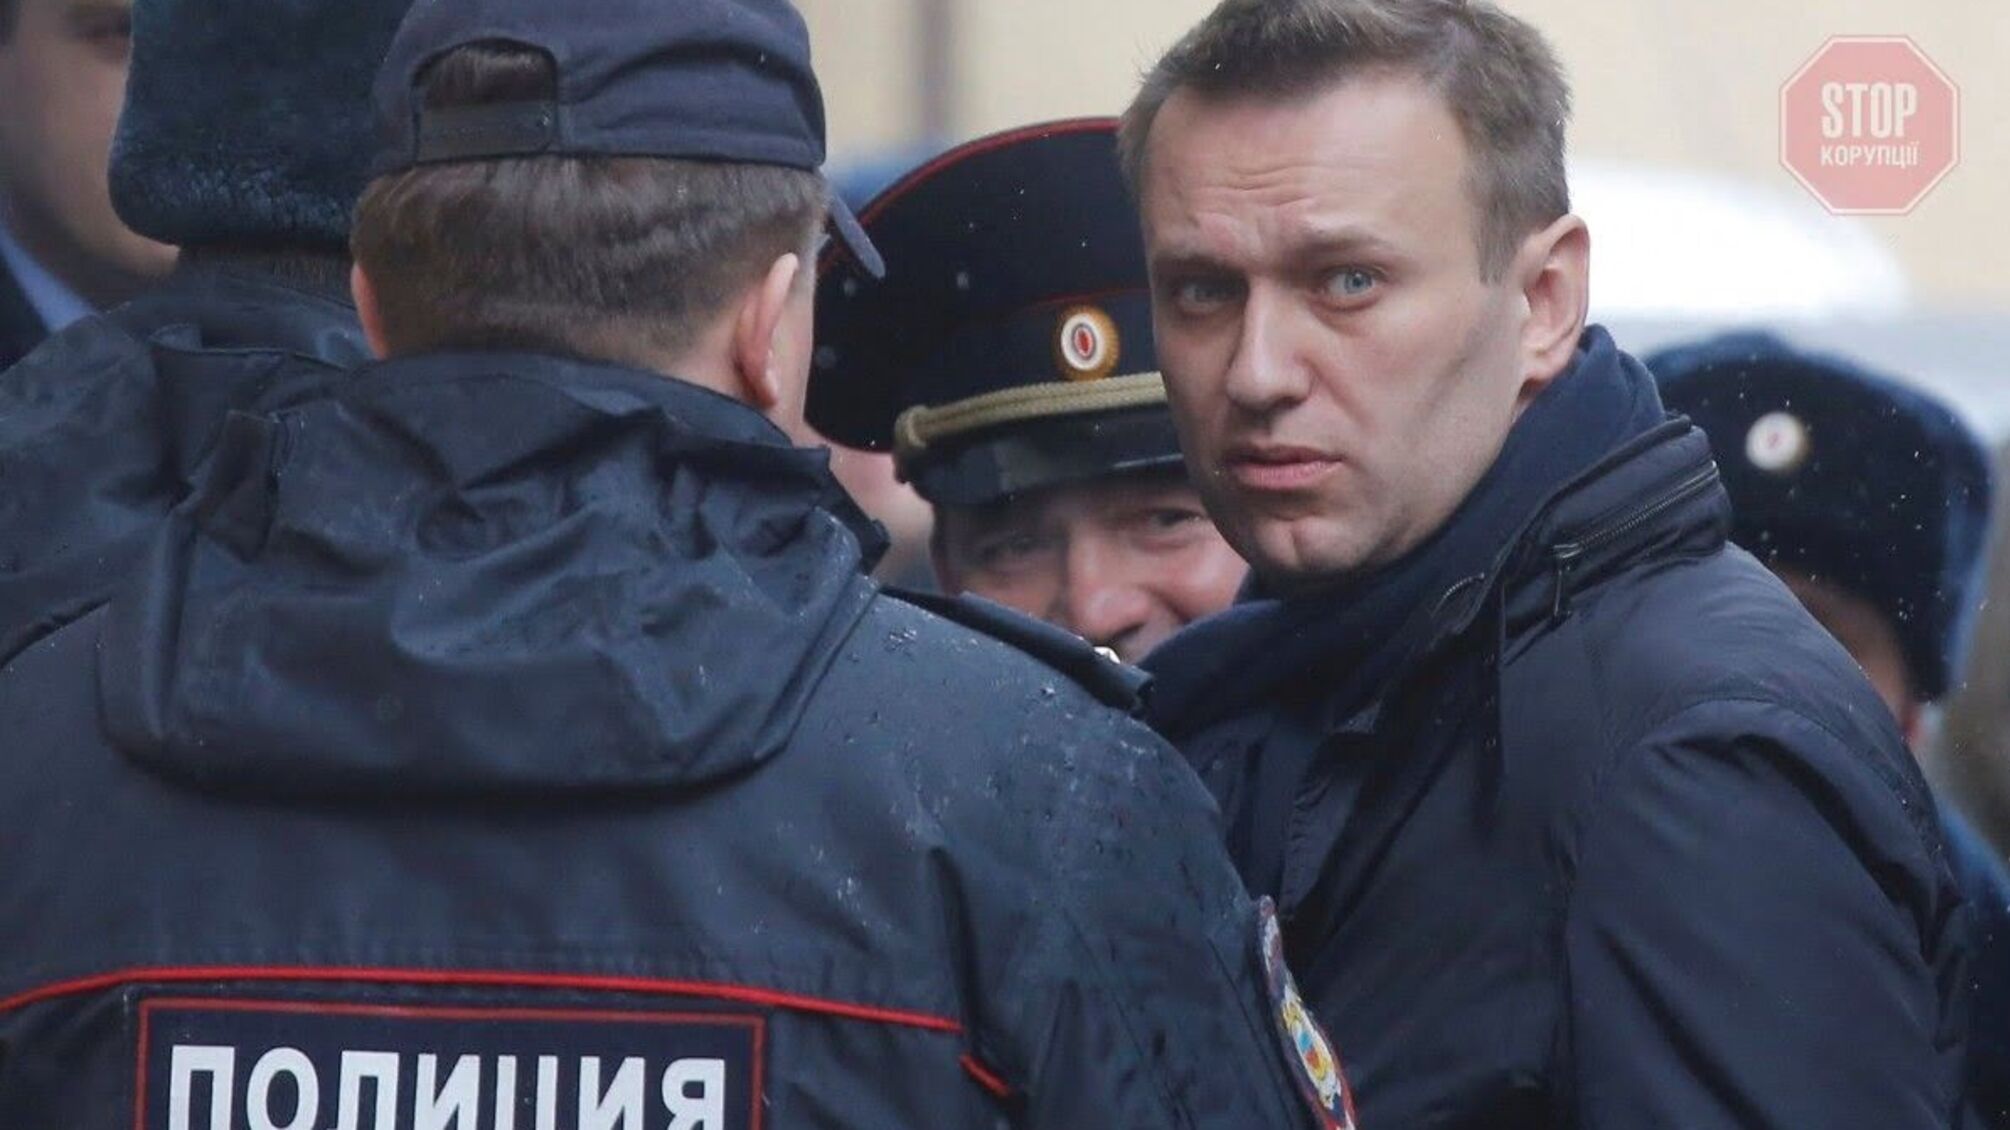 ЗМІ: У ЄС завтра представлять санкційний список проти Росії через справу Навального